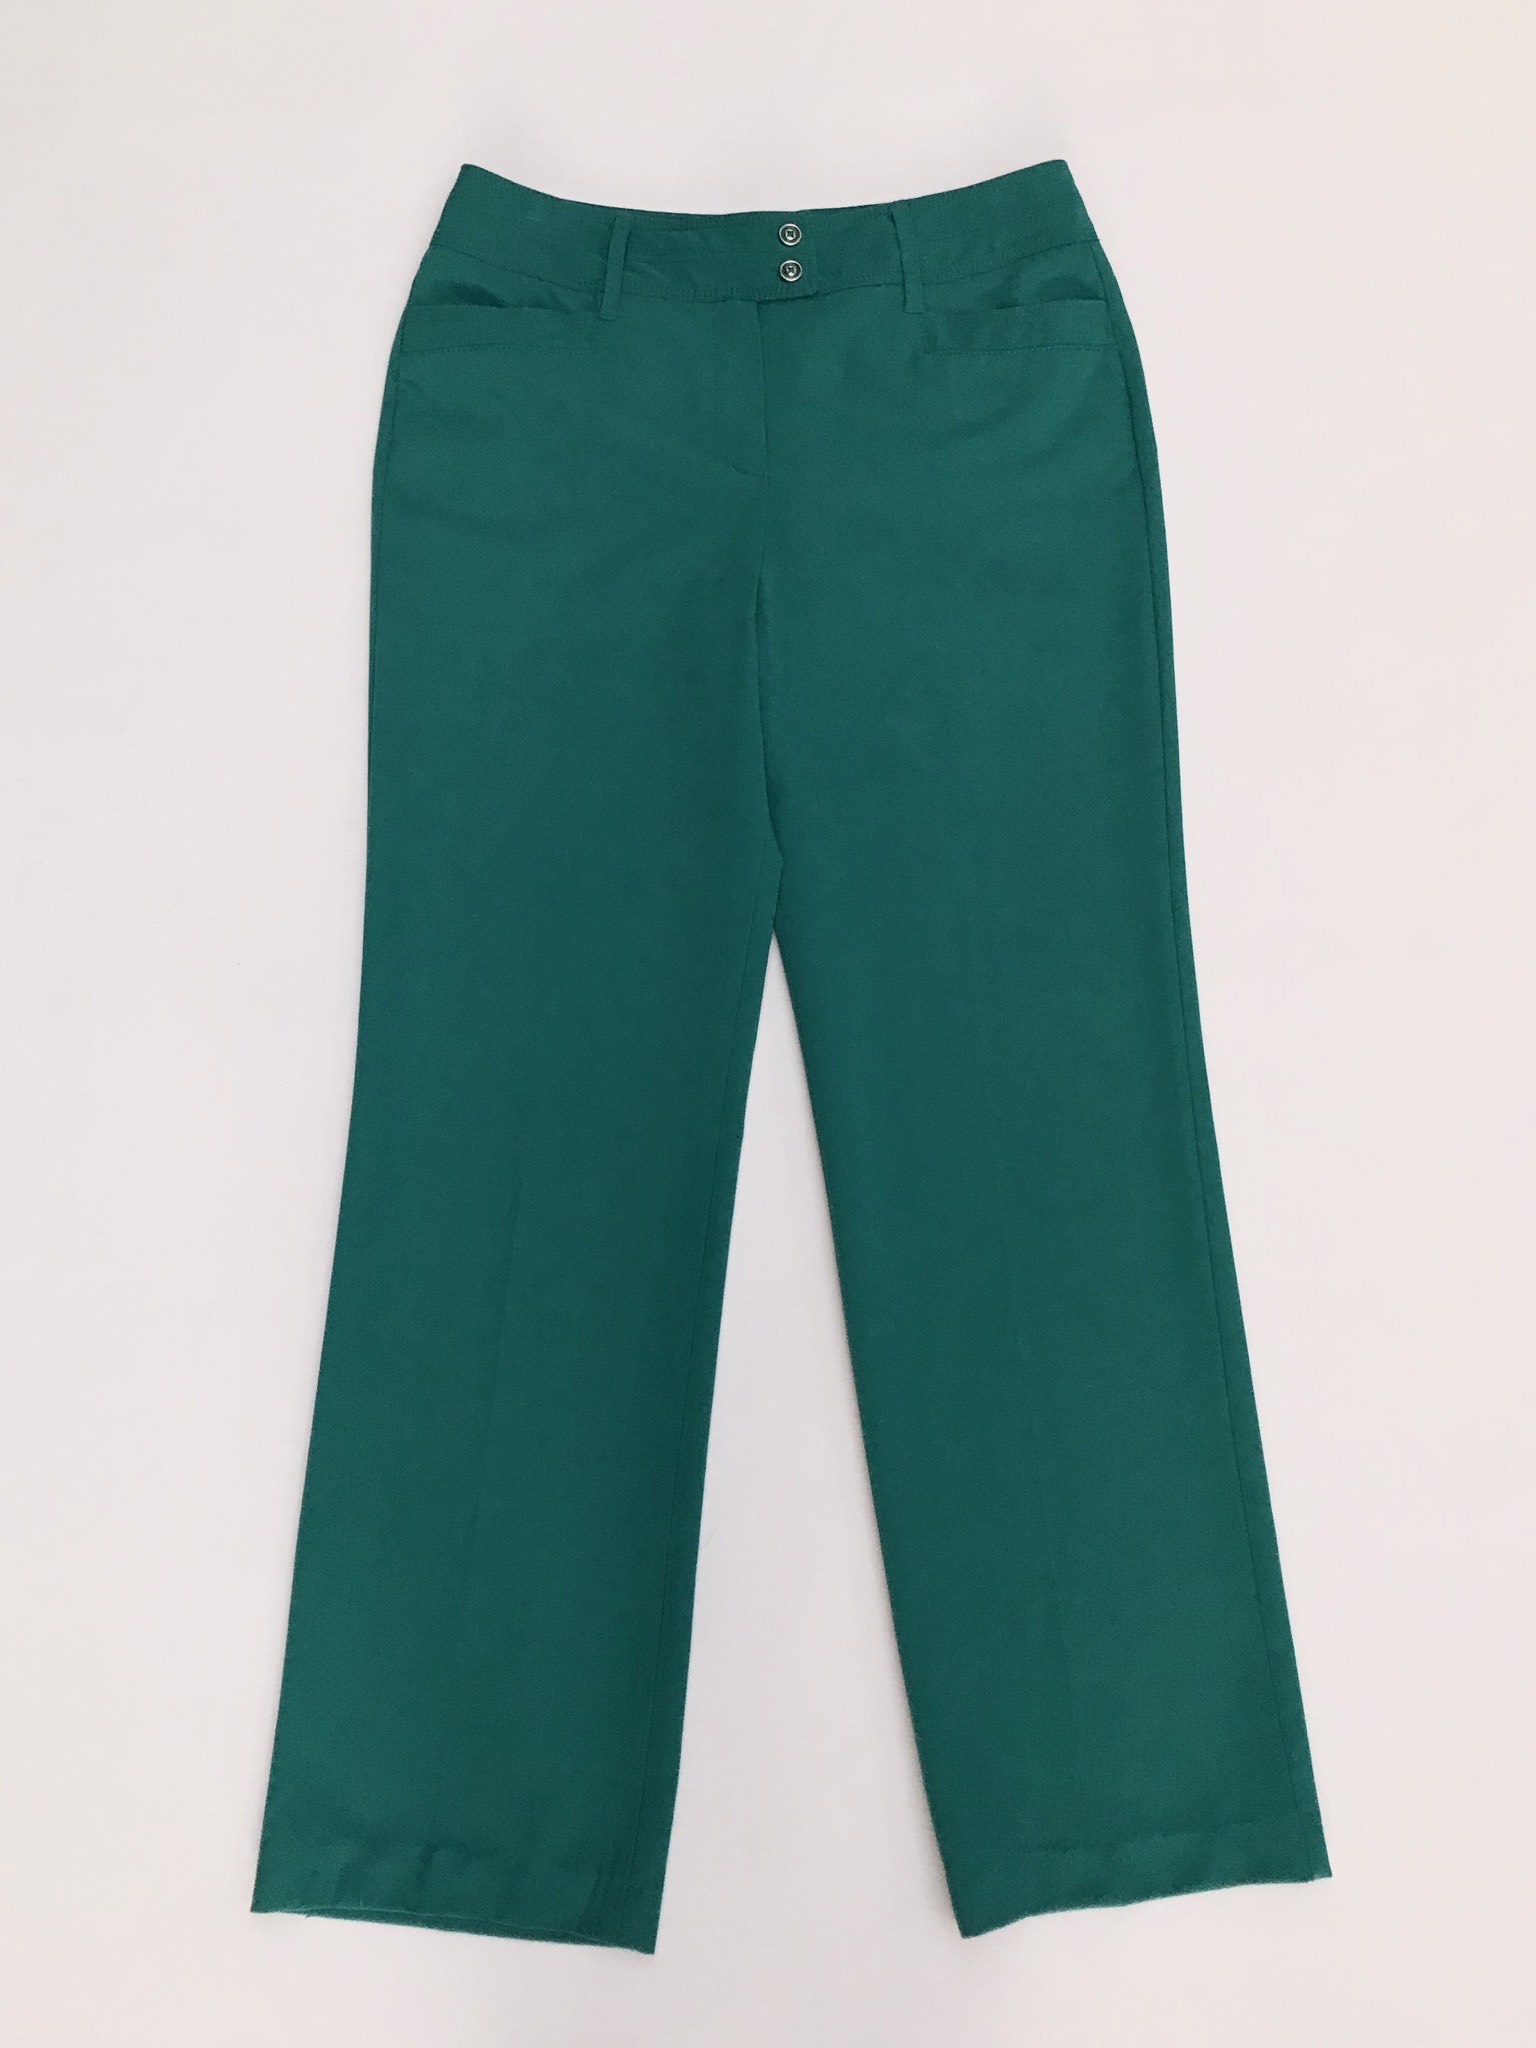 Pantalón verde jade, tela plana no stretch, 4 bolsillos, corte recto. Color hermoso
Talla 32 (US10)